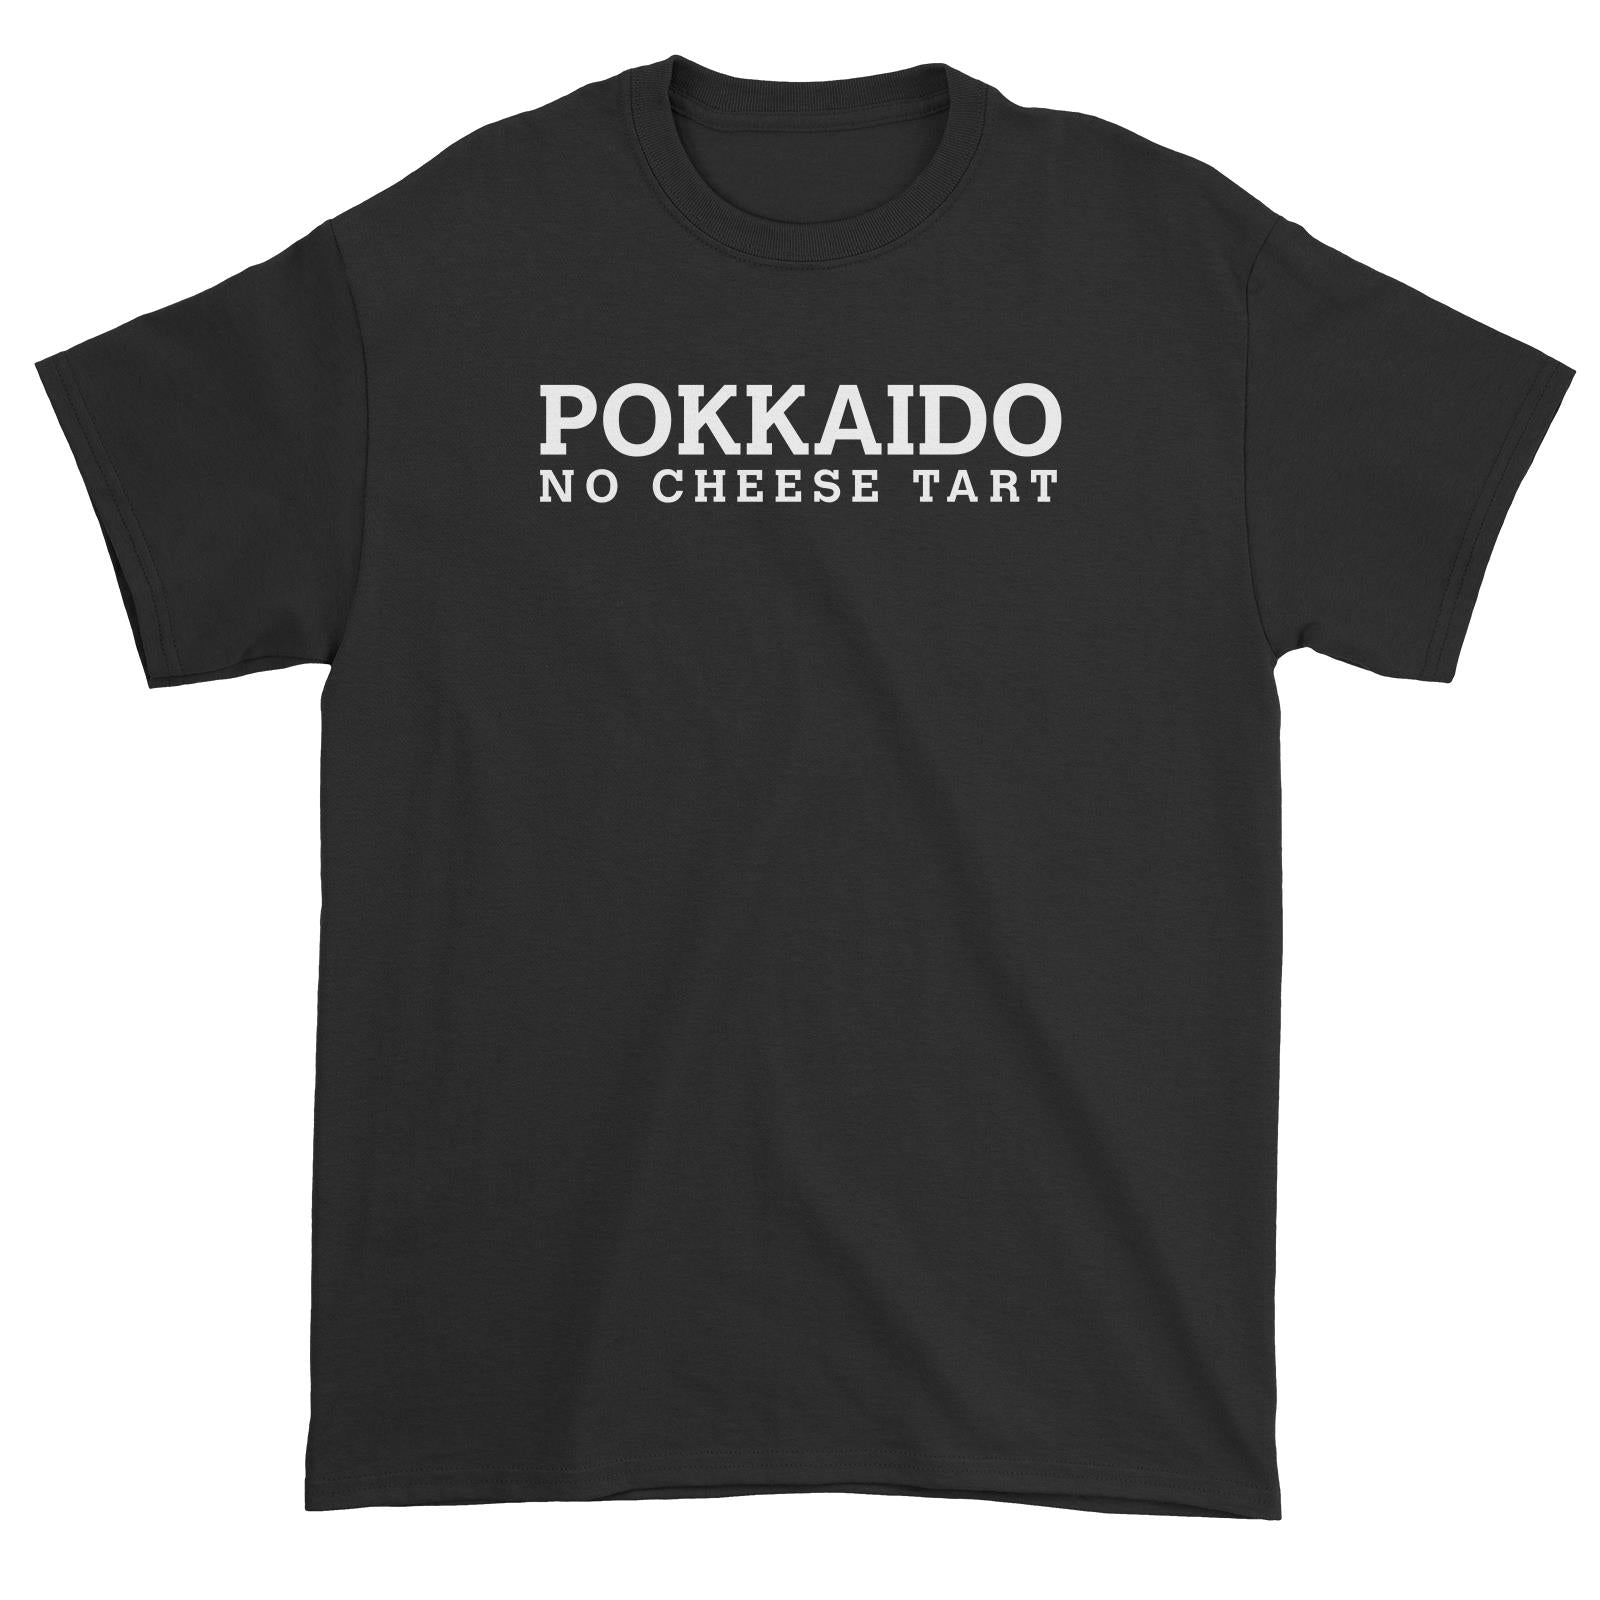 Slang Statement Pokkaido No Cheese Tart Unisex T-Shirt